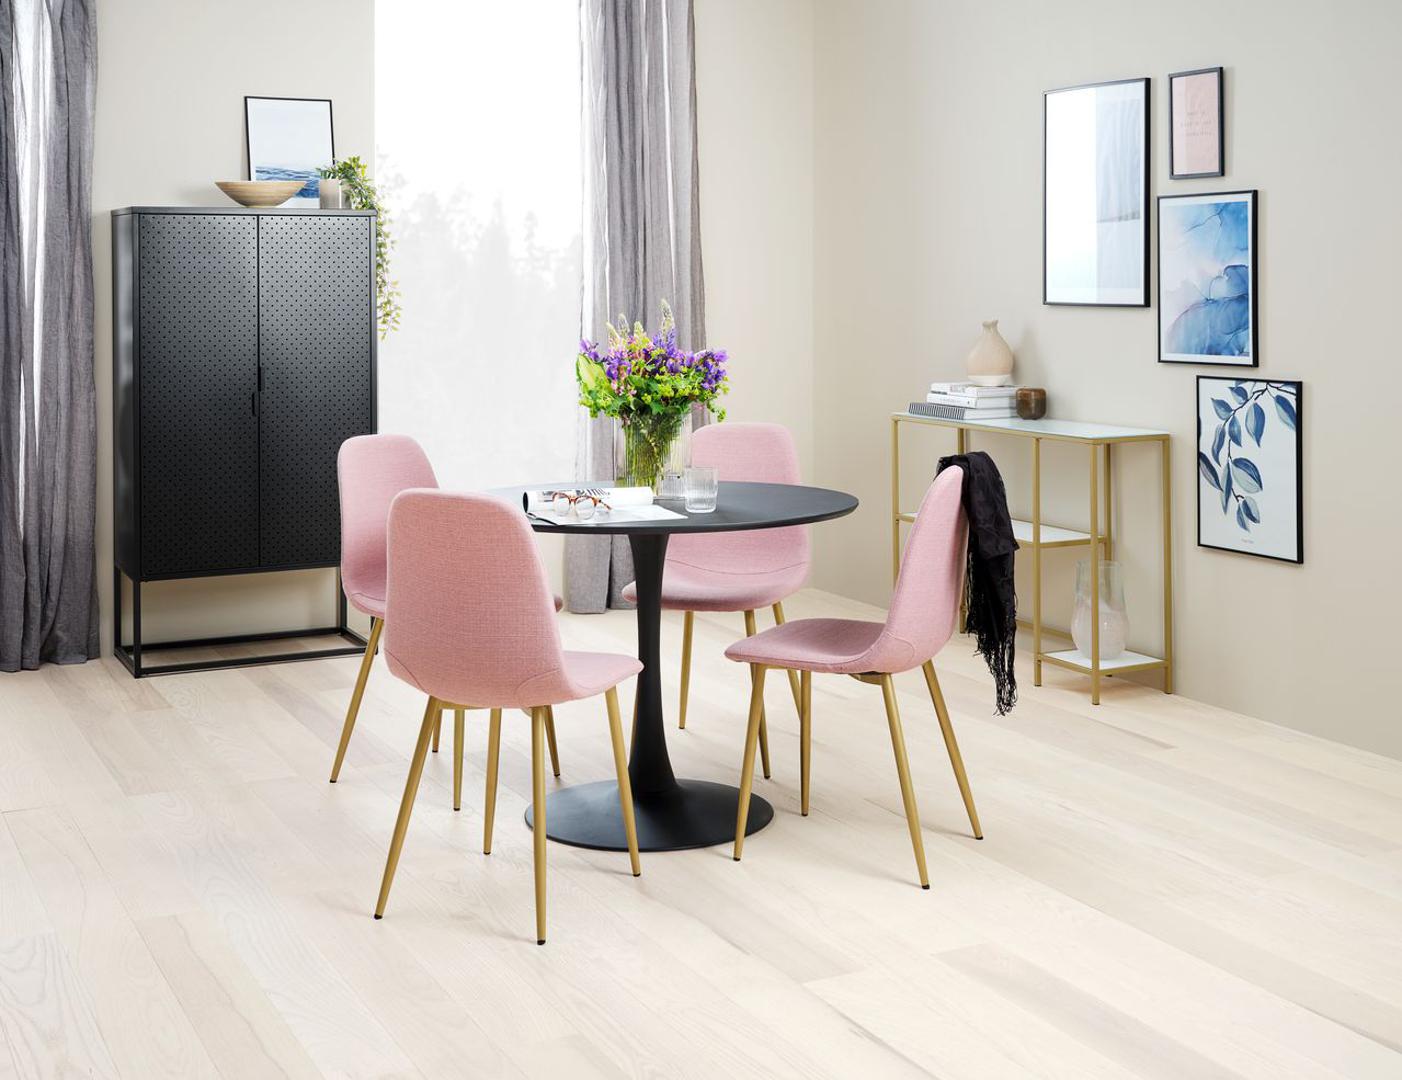 Razigran stol postić ćete kombiniranjem stolica različitih boja ili stilova, a sve i da je sam stol jednostavno dekoriran, stolice će stvoriti zaigran i kreativan prostor.  JYSK, 250 kn